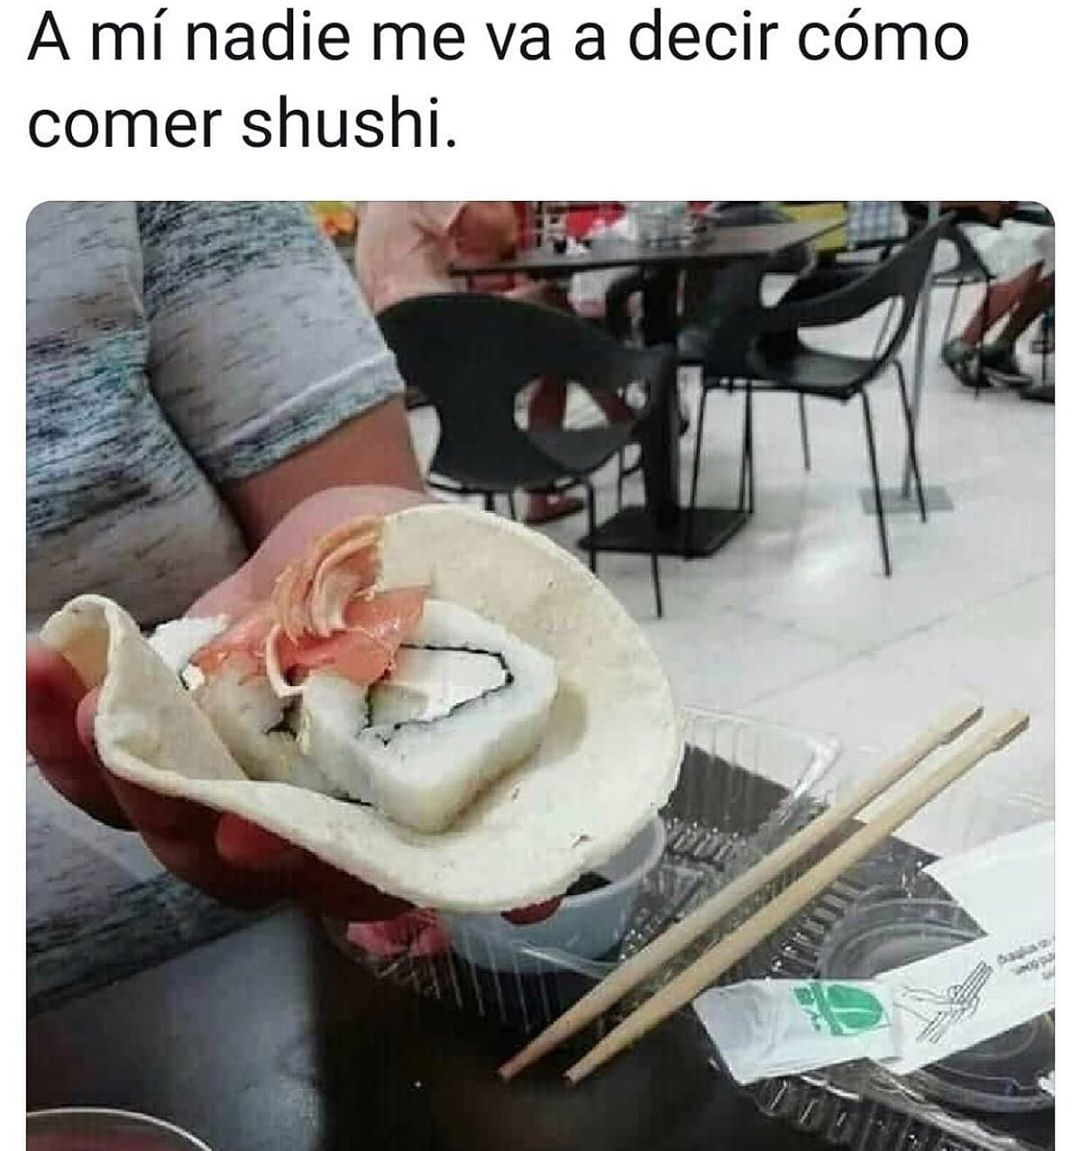 A mí nadie me va a decir cómo comer shushi.